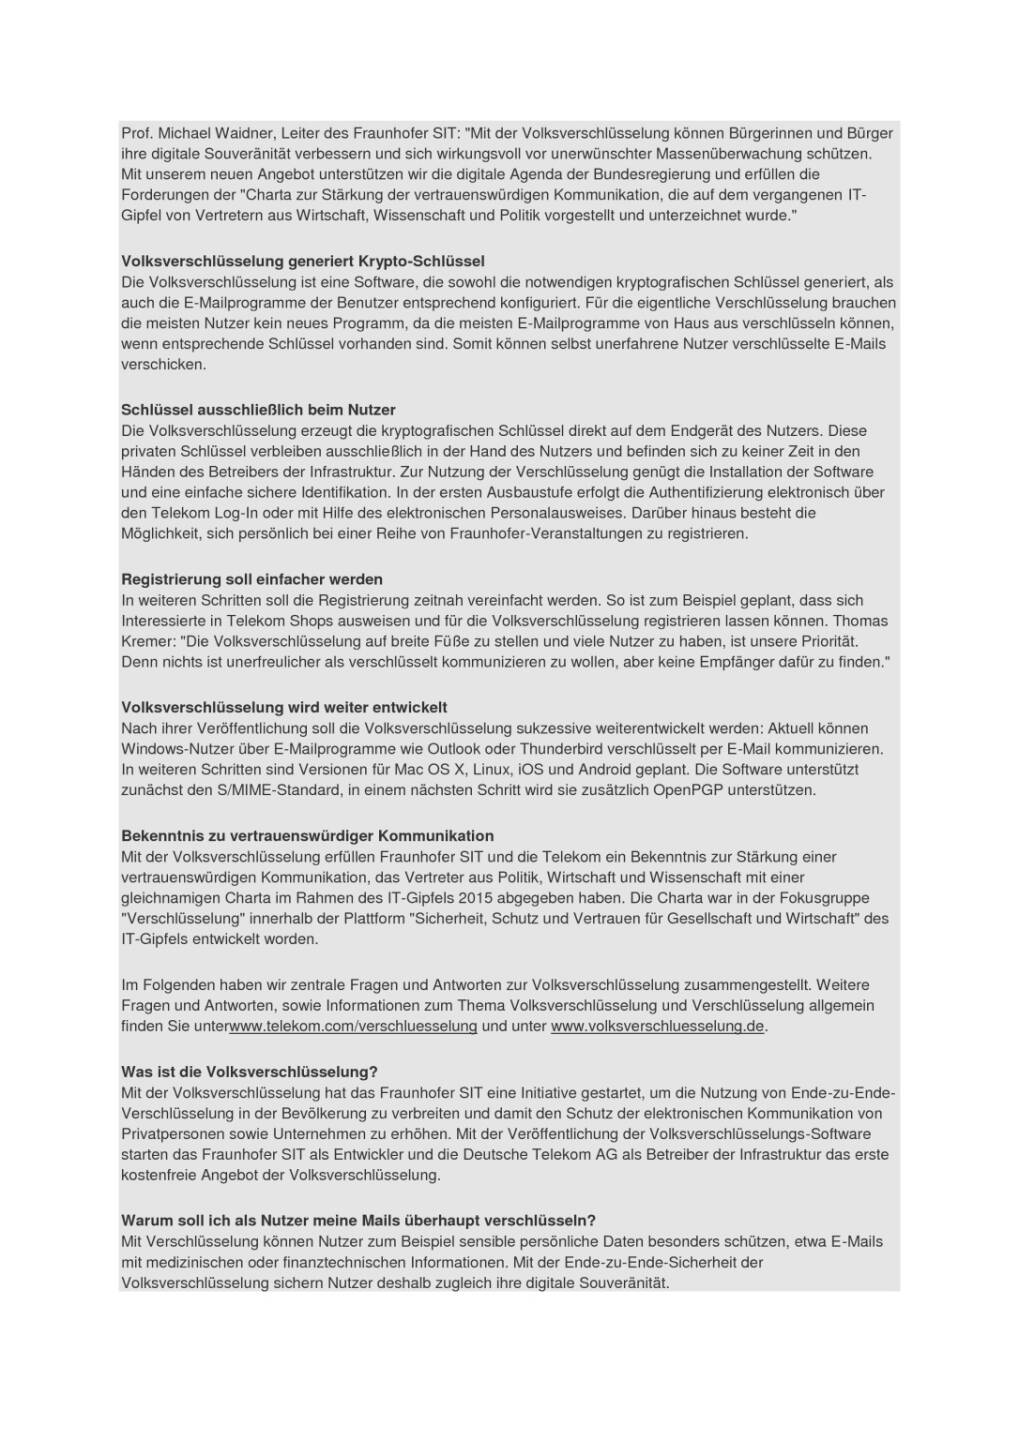 Deutsche Telekom: Volksverschlüsselung: Deutschland mailt sicher, Seite 2/4, komplettes Dokument unter http://boerse-social.com/static/uploads/file_1290_deutsche_telekom_volksverschlusselung_deutschland_mailt_sicher.pdf